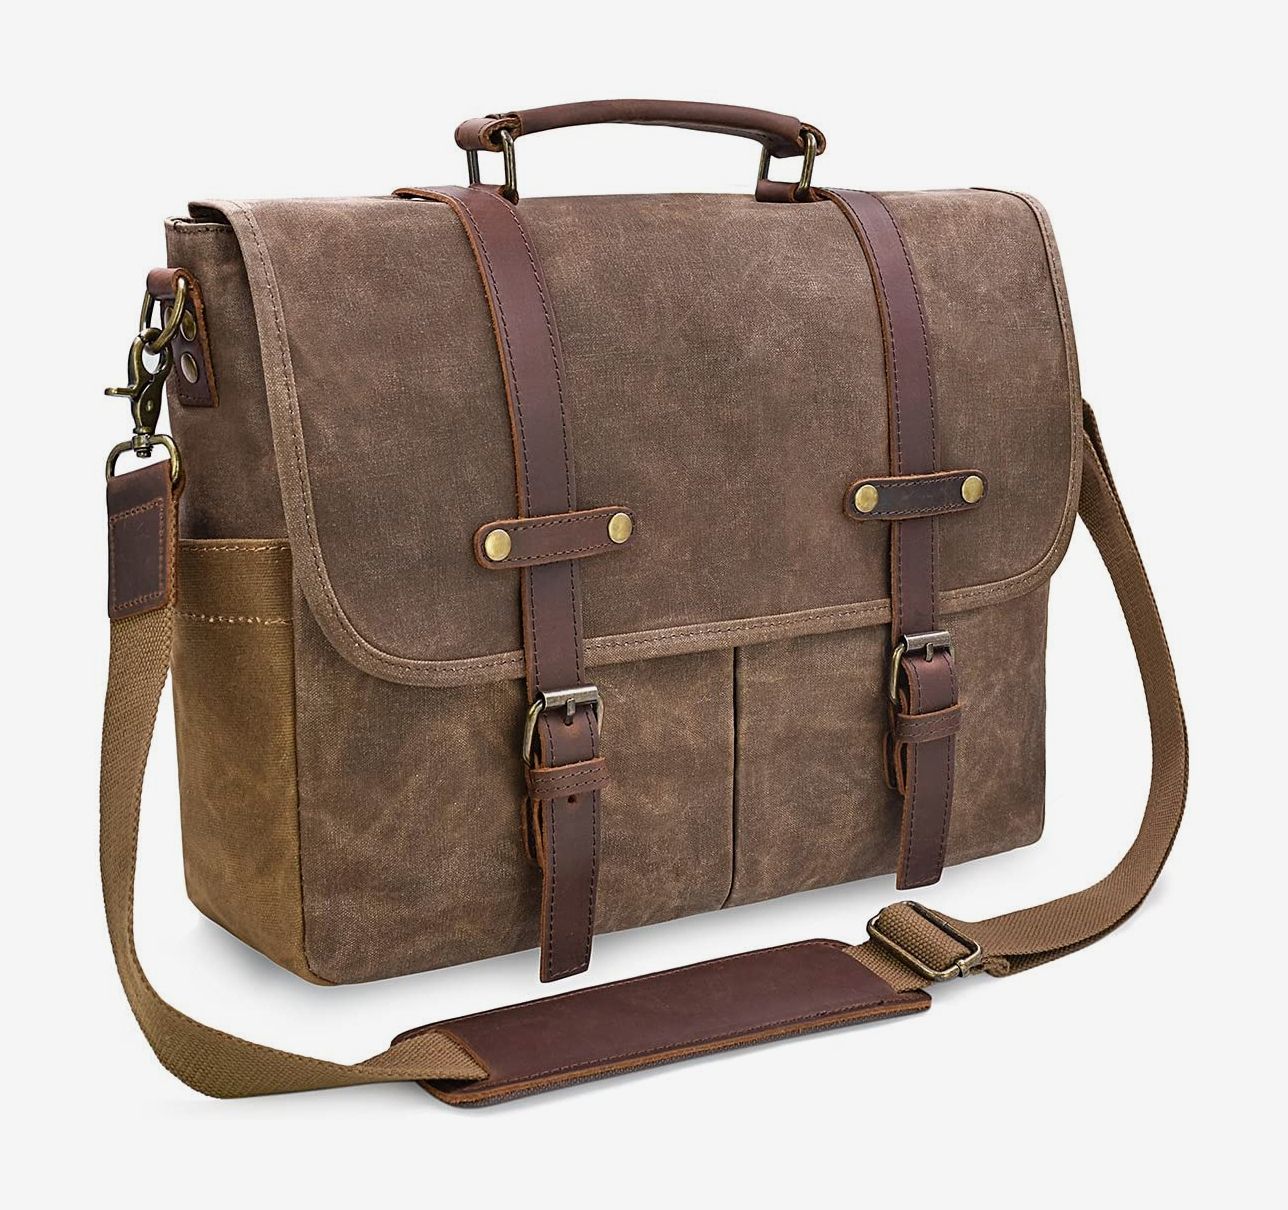 Leather Briefcase Laptop Bag Messenger Shoulder Work Bag Crossbody Handbag for Business Travelling Christmas for Men 